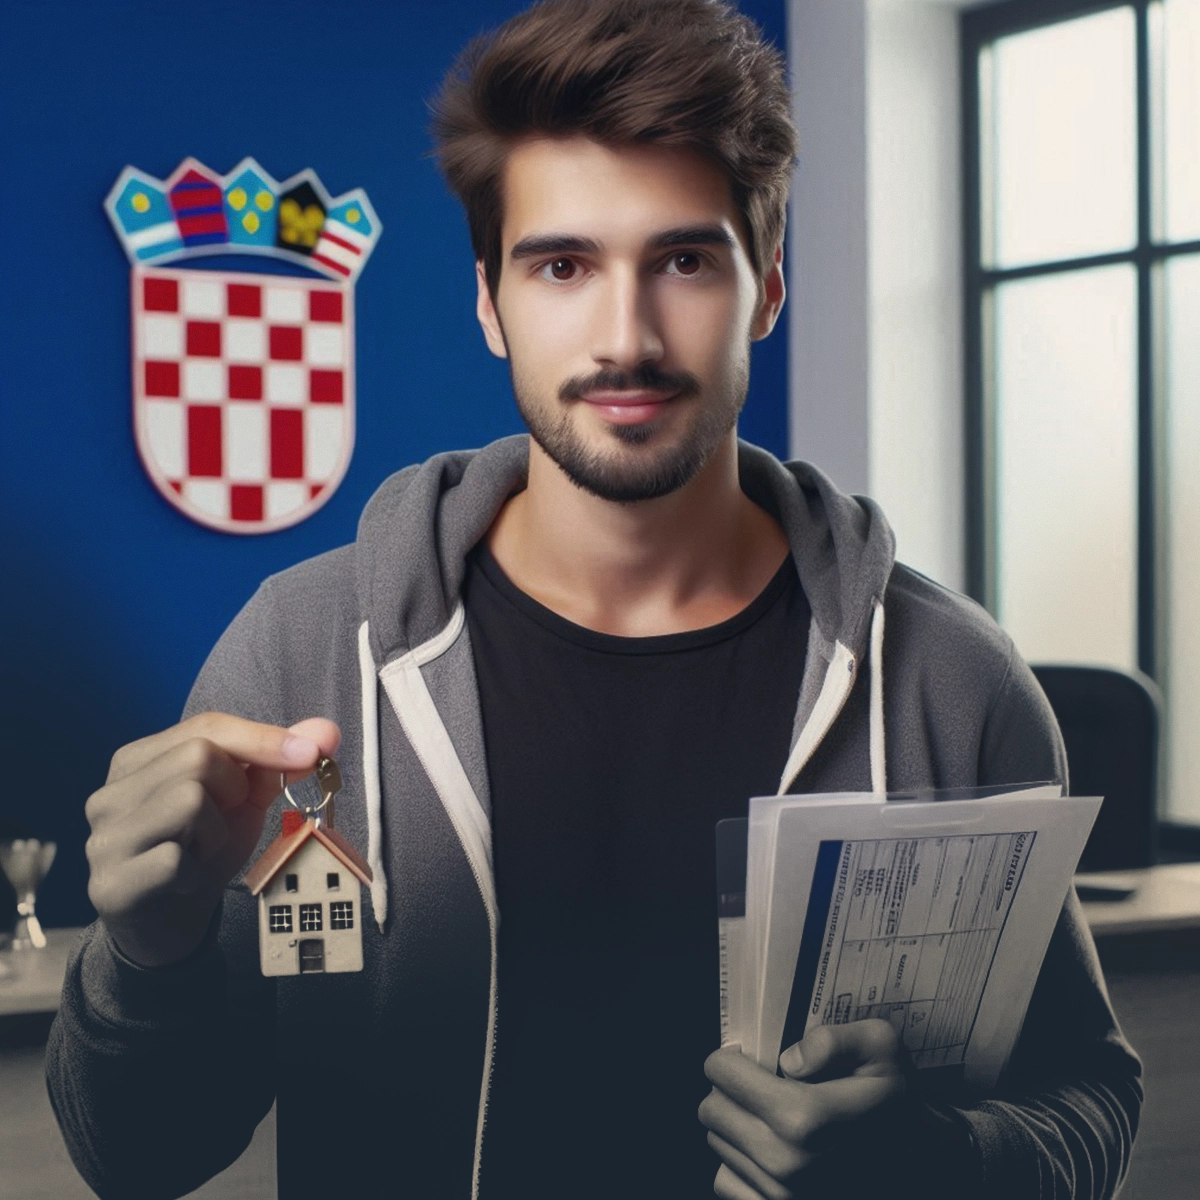 محدودیت موجود برای خریداران خارجی ملک در کرواسی